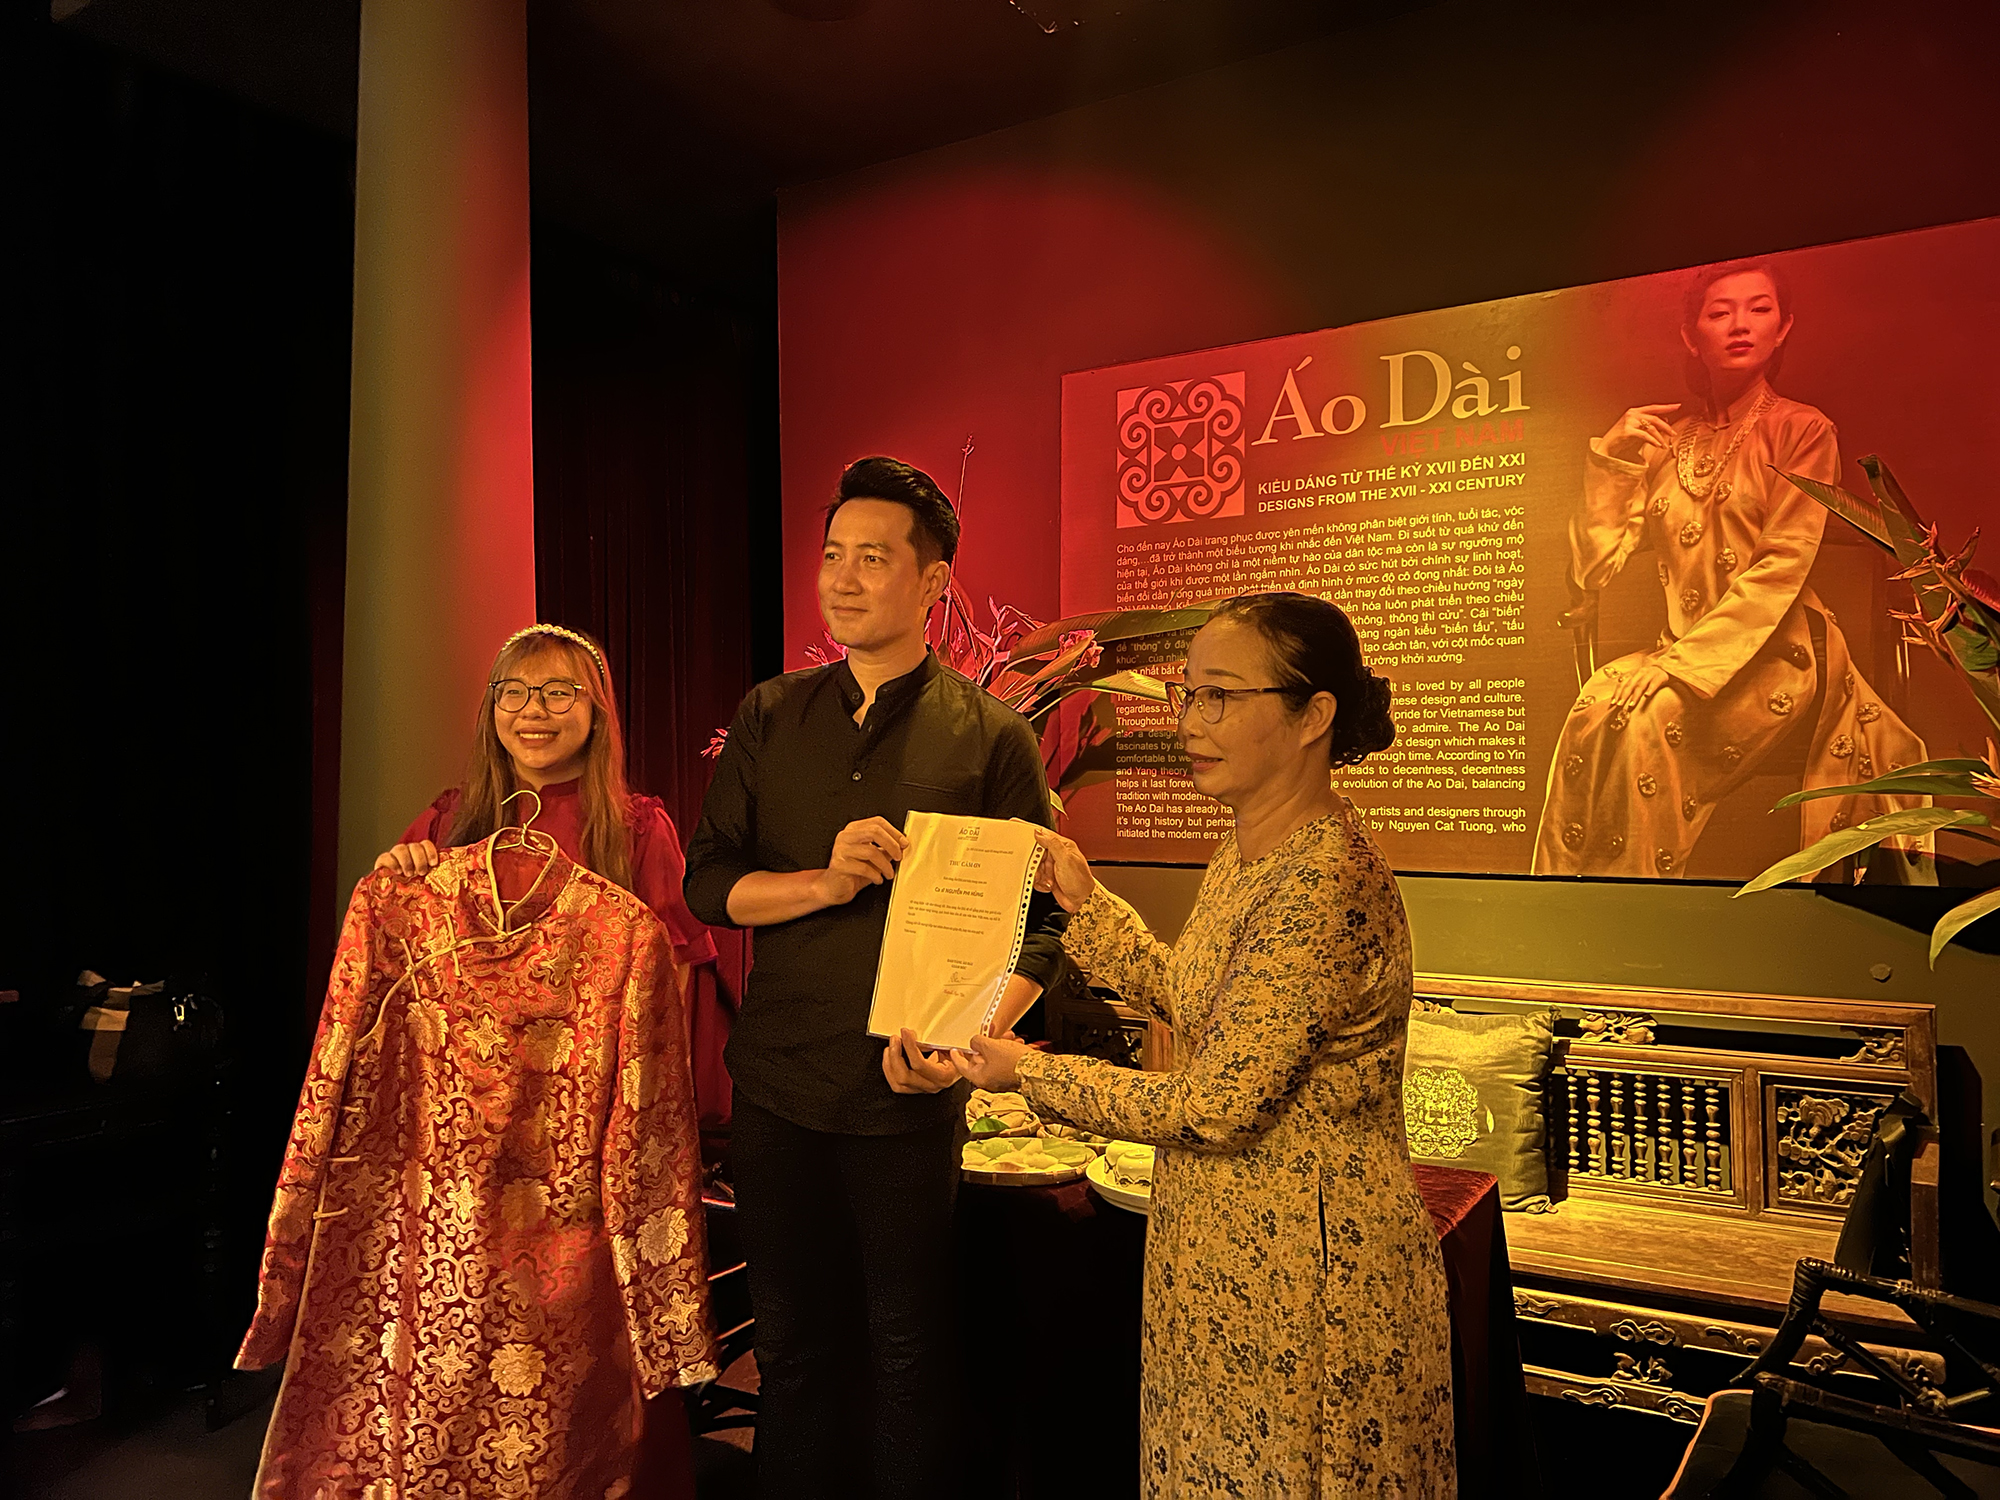 Sáng 9/3, ca sĩ Nguyễn Phi Hùng có mặt tại Bảo tàng Áo dài để trao tặng áo dài của anh, nhân sự kiện triển lãm Nối vòng tay lớn. Tại đây, bảo tàng trưng bày áo dài của những nhân vật có đóng góp tích cực trong cuộc chiến chống COVID-19 thời gian qua. 